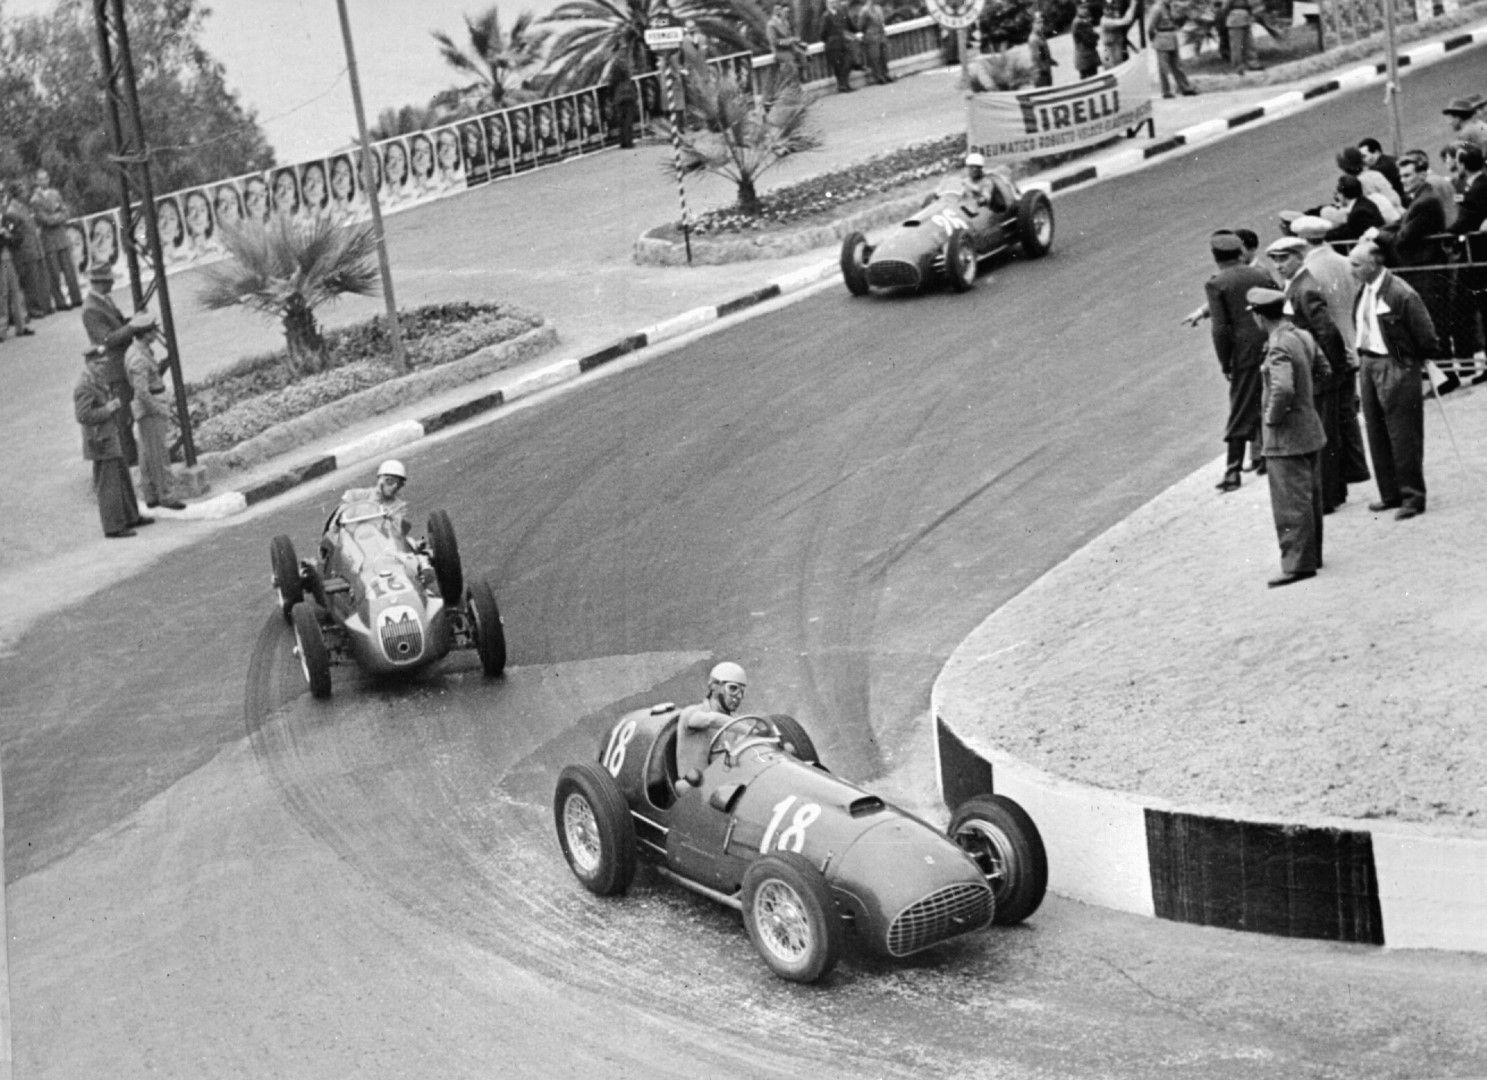  1951 година - Алберто Аскари с "Ферари" печели състезанието на Сан Ремо, като Мос остава втори.